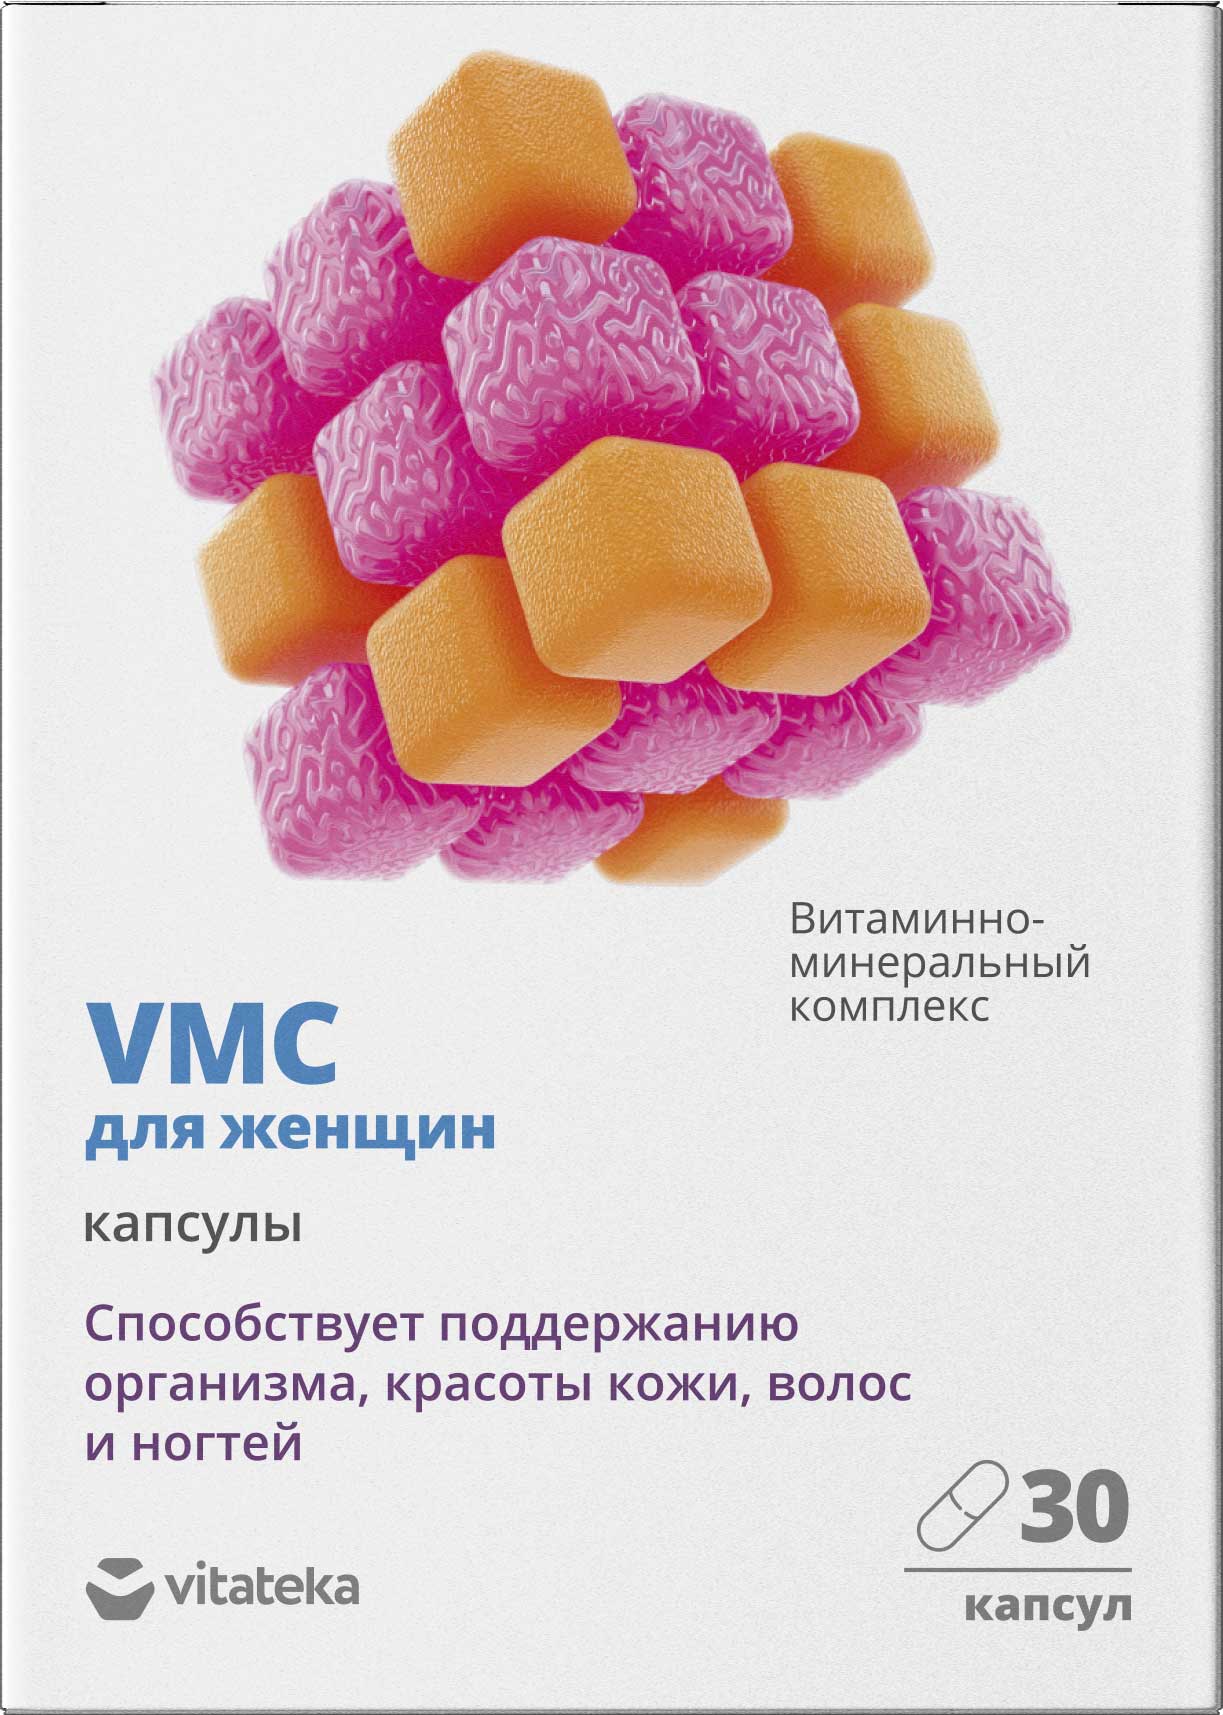 Витаминно-минеральный комплекс для женщин